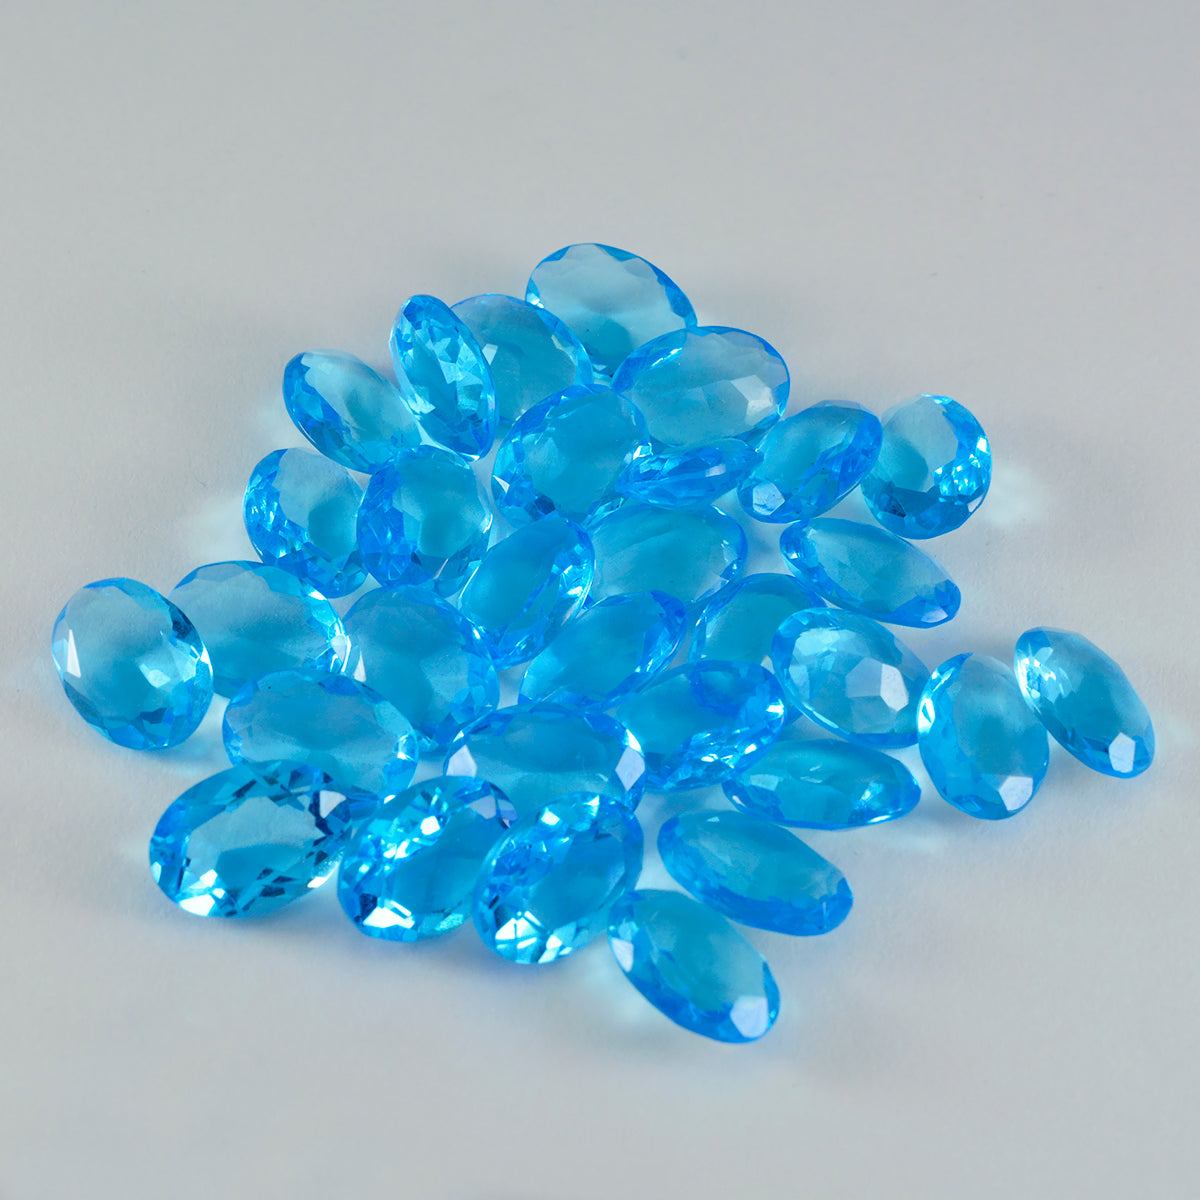 Riyogems 1 Stück blauer Topas, CZ, facettiert, 7 x 9 mm, ovale Form, wunderschöner Qualitäts-Edelstein